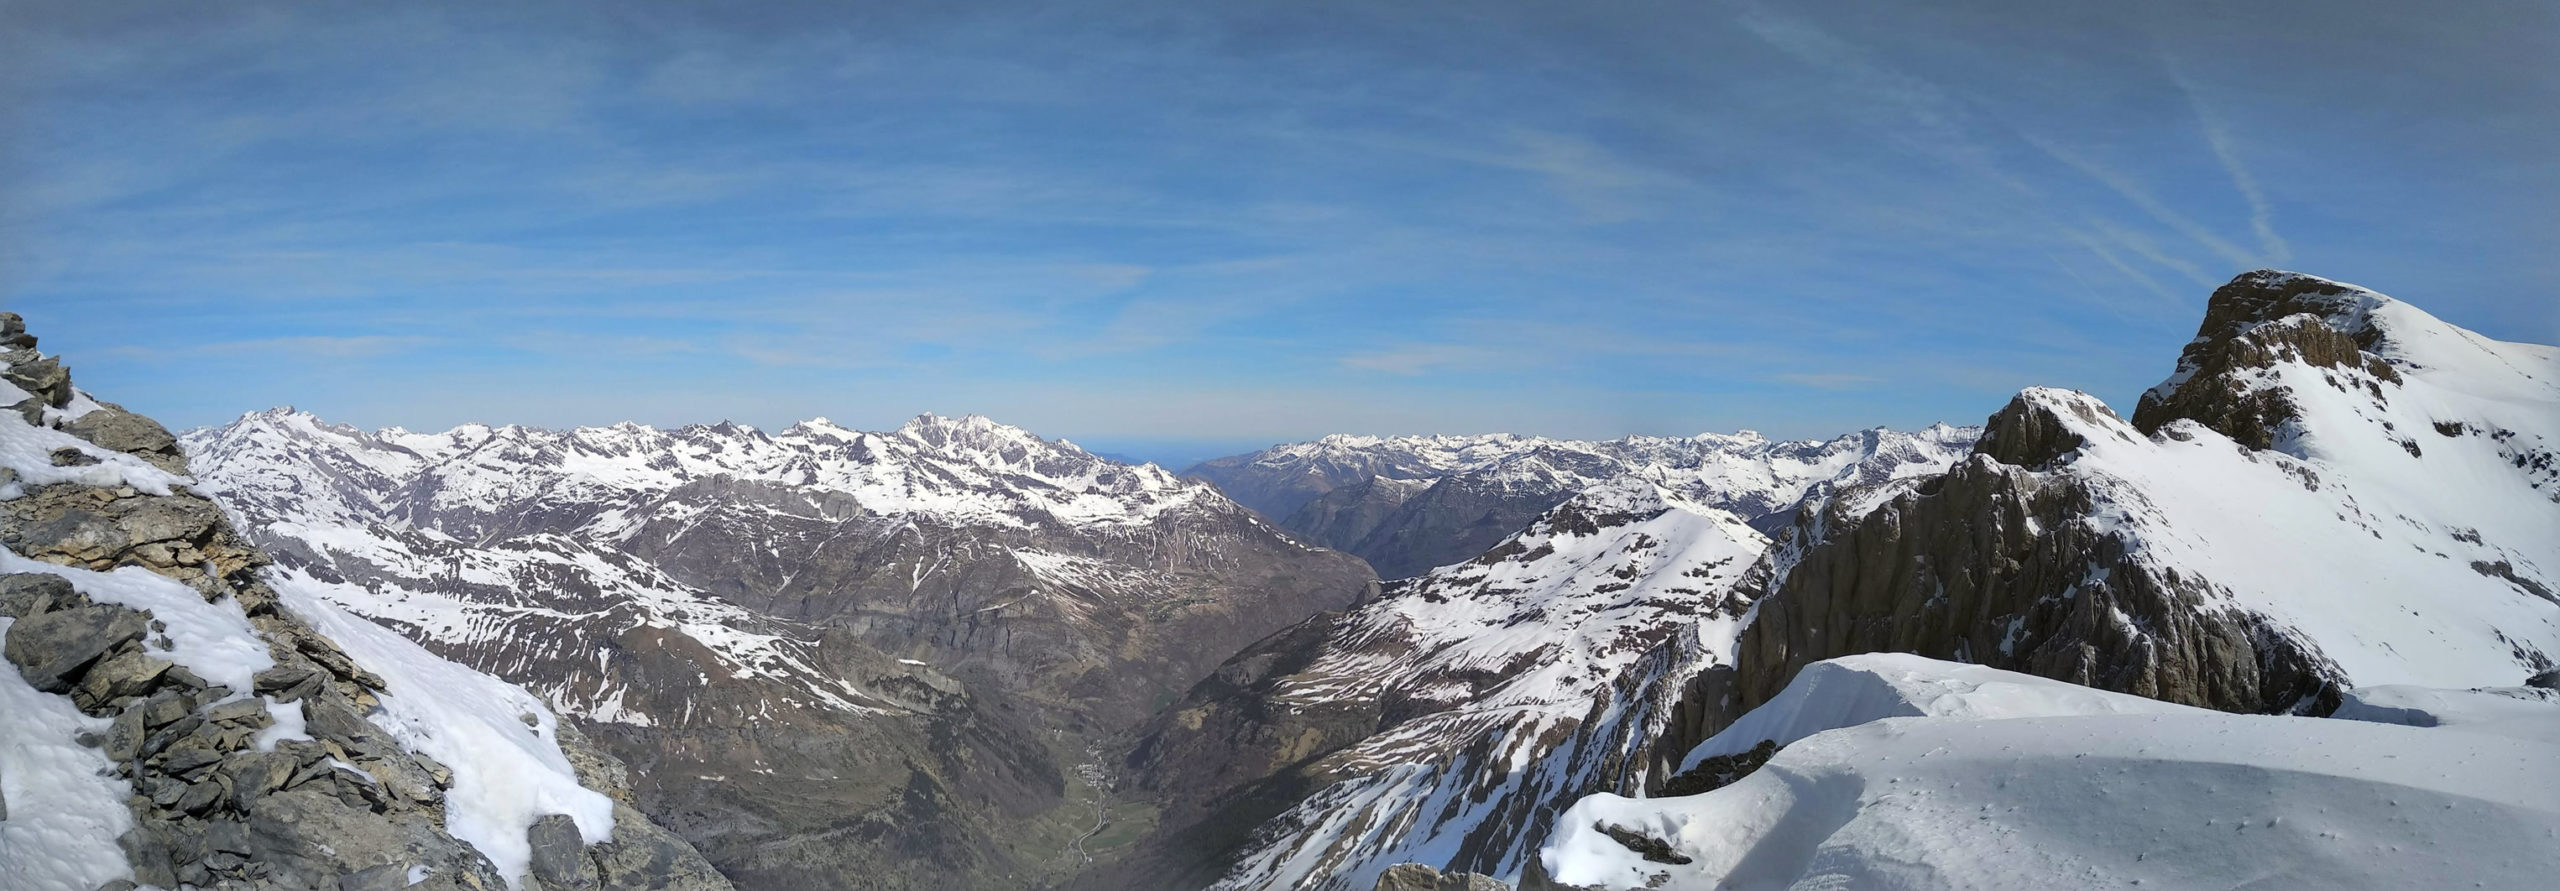 A la izquierda la cima del Pico Occidental de La Cascada o Pica de La Ule, al fondo izquierda el Vignemale, abajo el Valle de Gavarnié, a la derecha la antecima norte con la explanada nevada del Pico Occidental de La Cascada con el resto de los Picos de La Cascada y el Marboré arriba